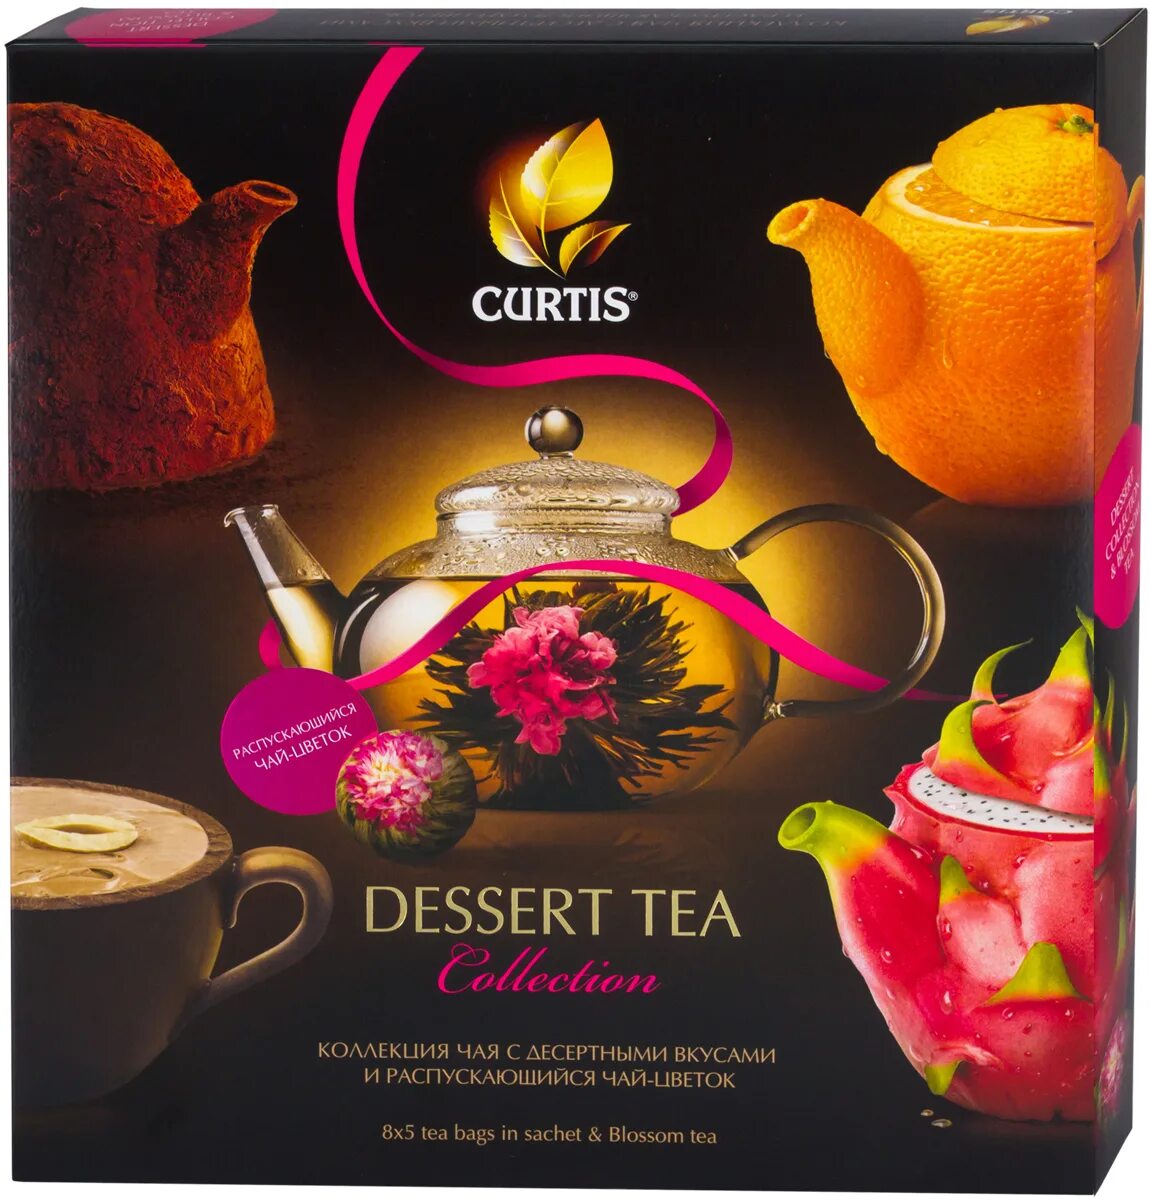 Чай Кёртис десерт набор 40. Чай Curtis Dessert Tea collection. Чай Кертис 40 пакетиков набор. Чай Кертис подарочный набор в магните. Чай в пакетиках в магните